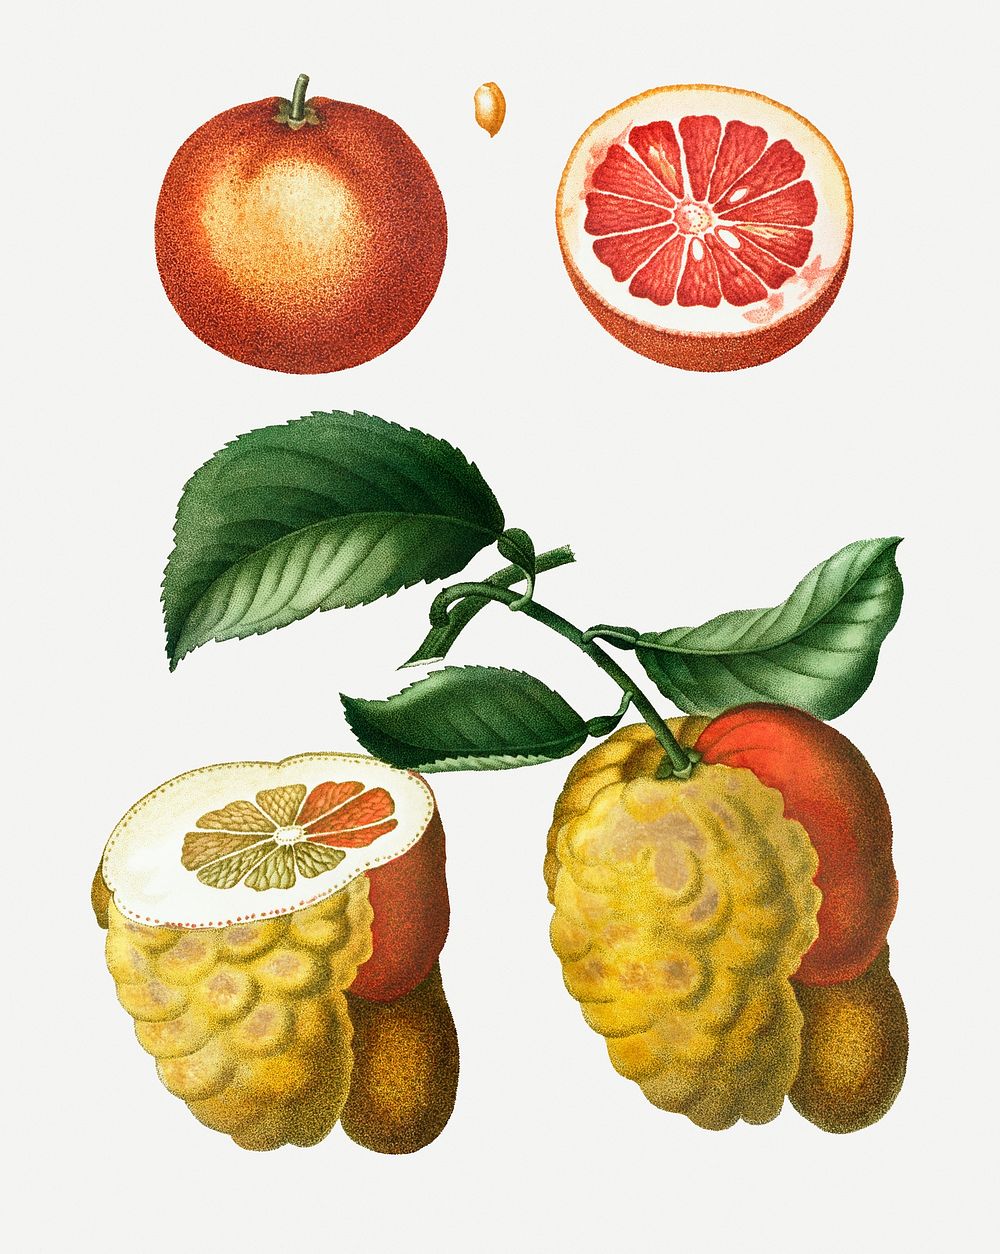 Blood orange and bigarade orange illustration